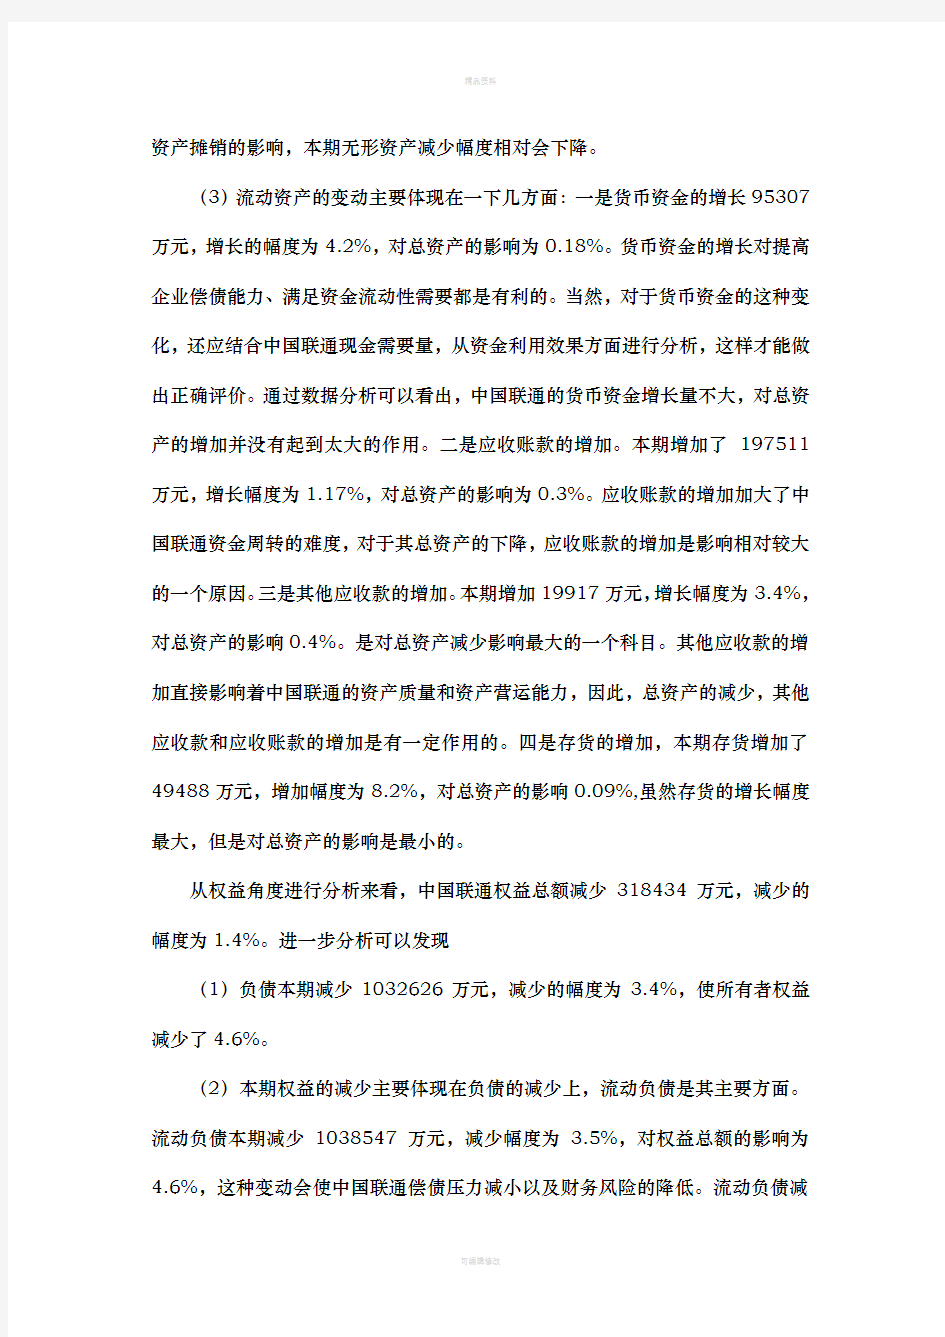 中国联通财务分析报告